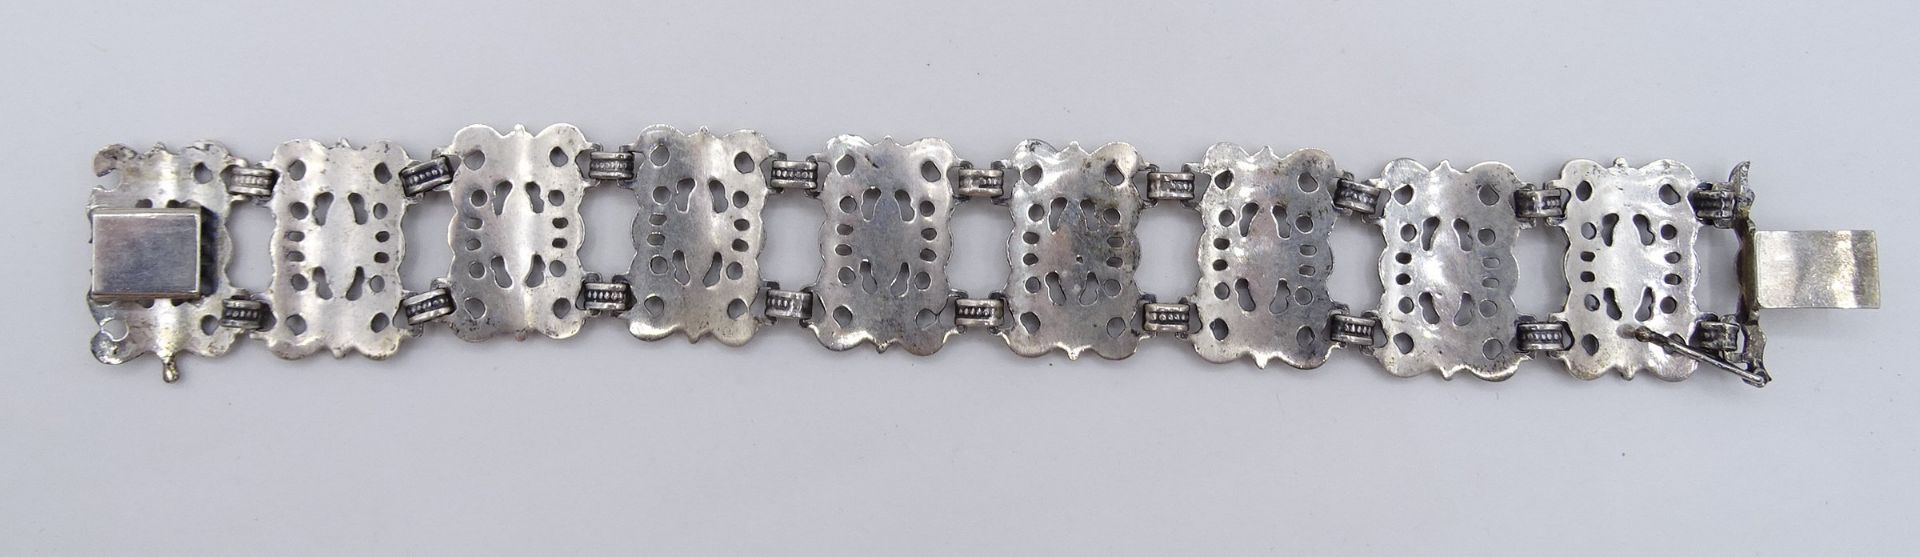 Armband "BAS", 925er-Silber, mit Steckverschluss, B. 2,3 cm, L. 18,5 cm, 35 gr., mit Altersspuren,  - Bild 4 aus 4